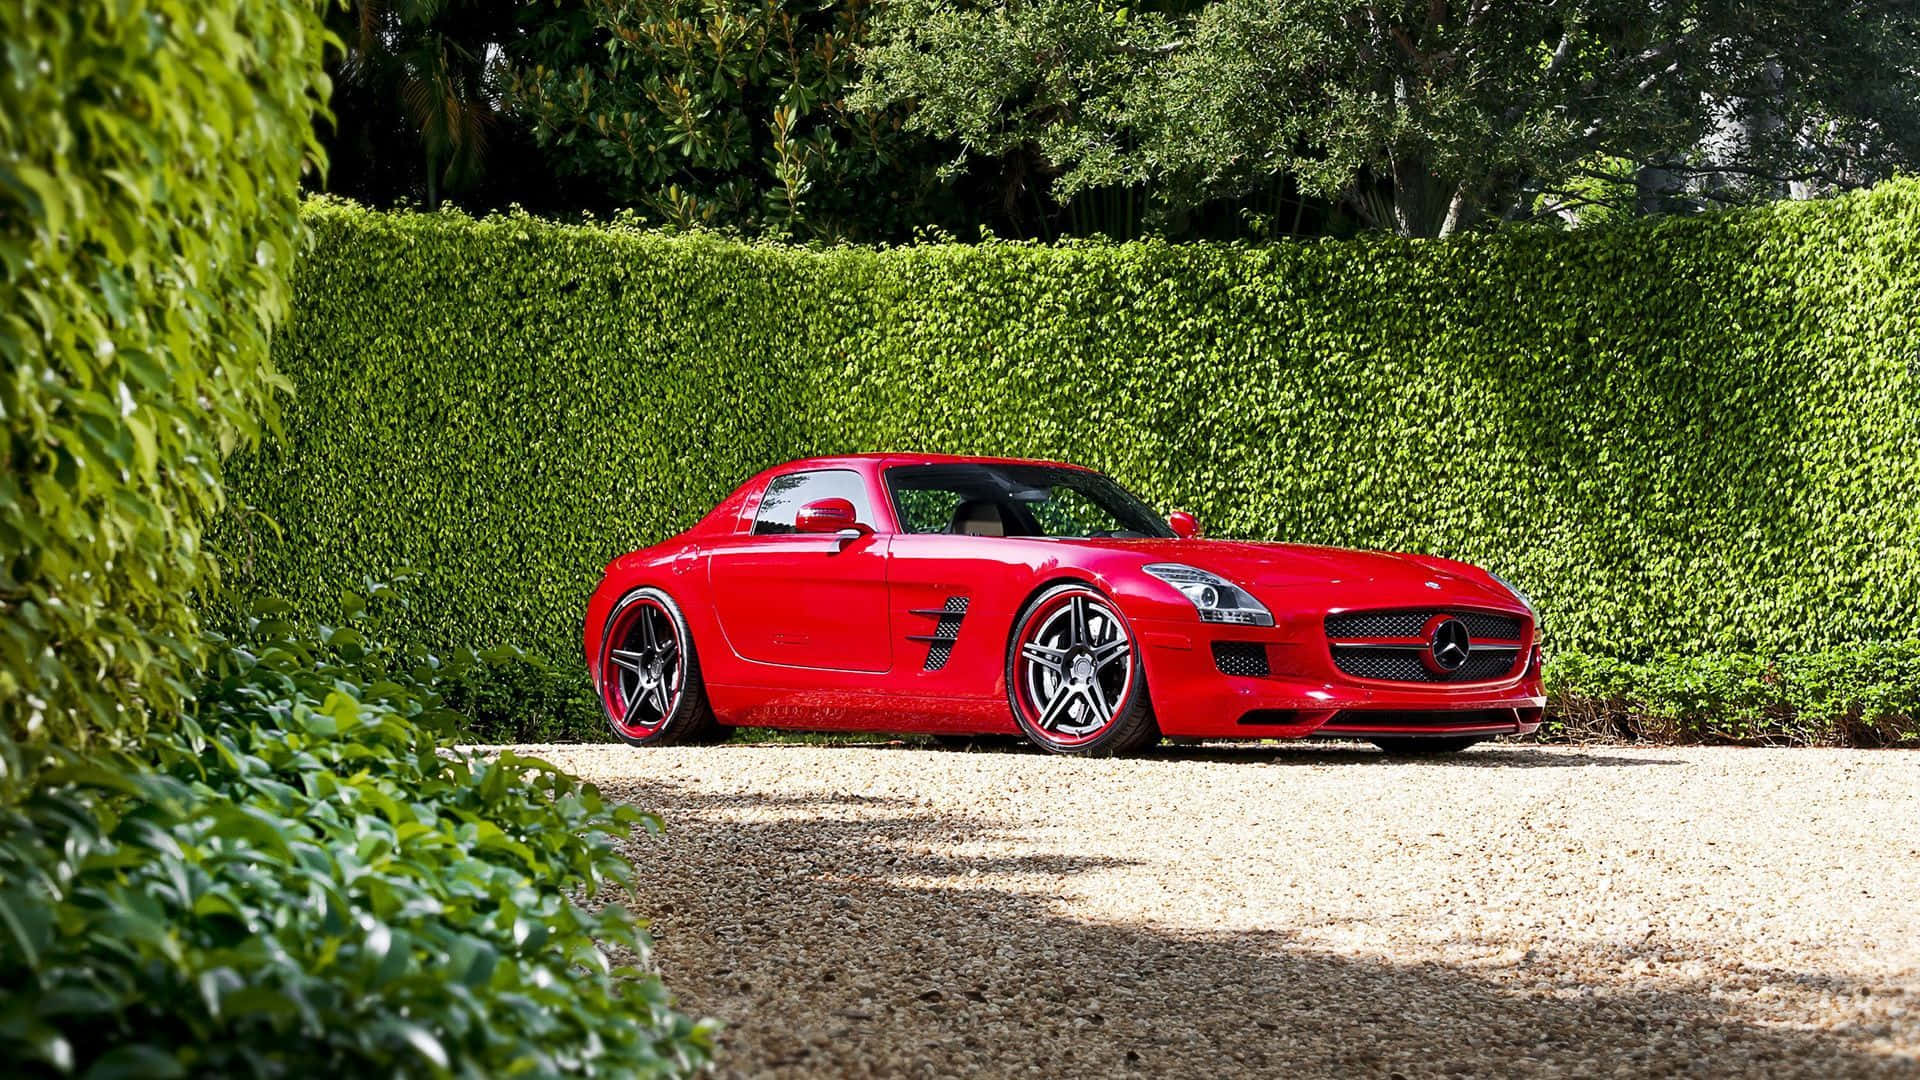 Mercedes Benz Red Sls Amg Background